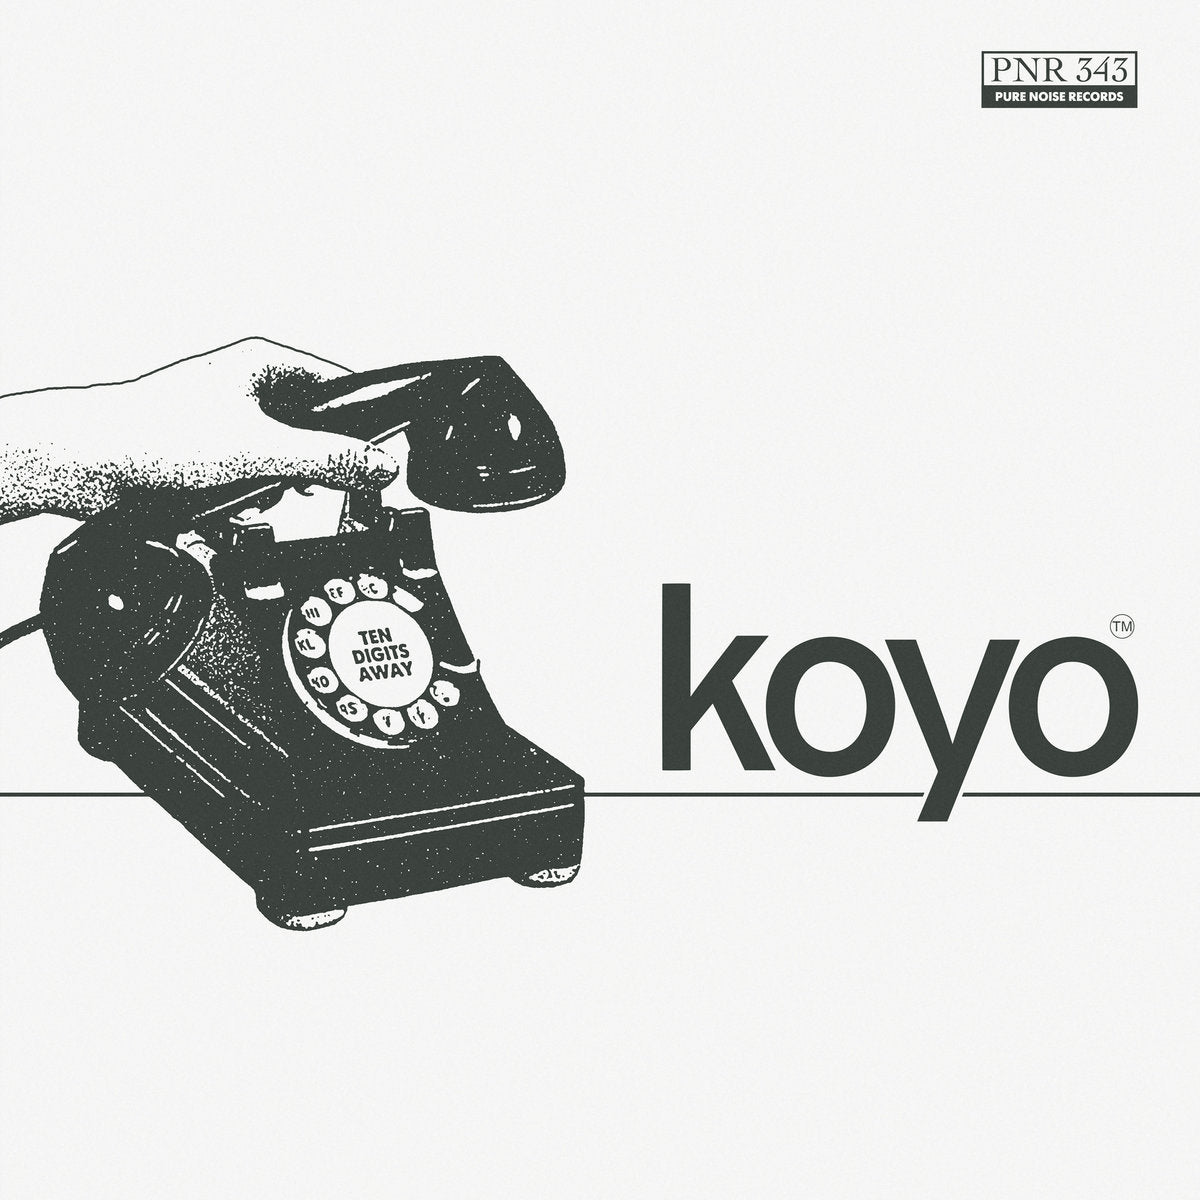 Koyo "Ten Digits Away" 7" Vinyl